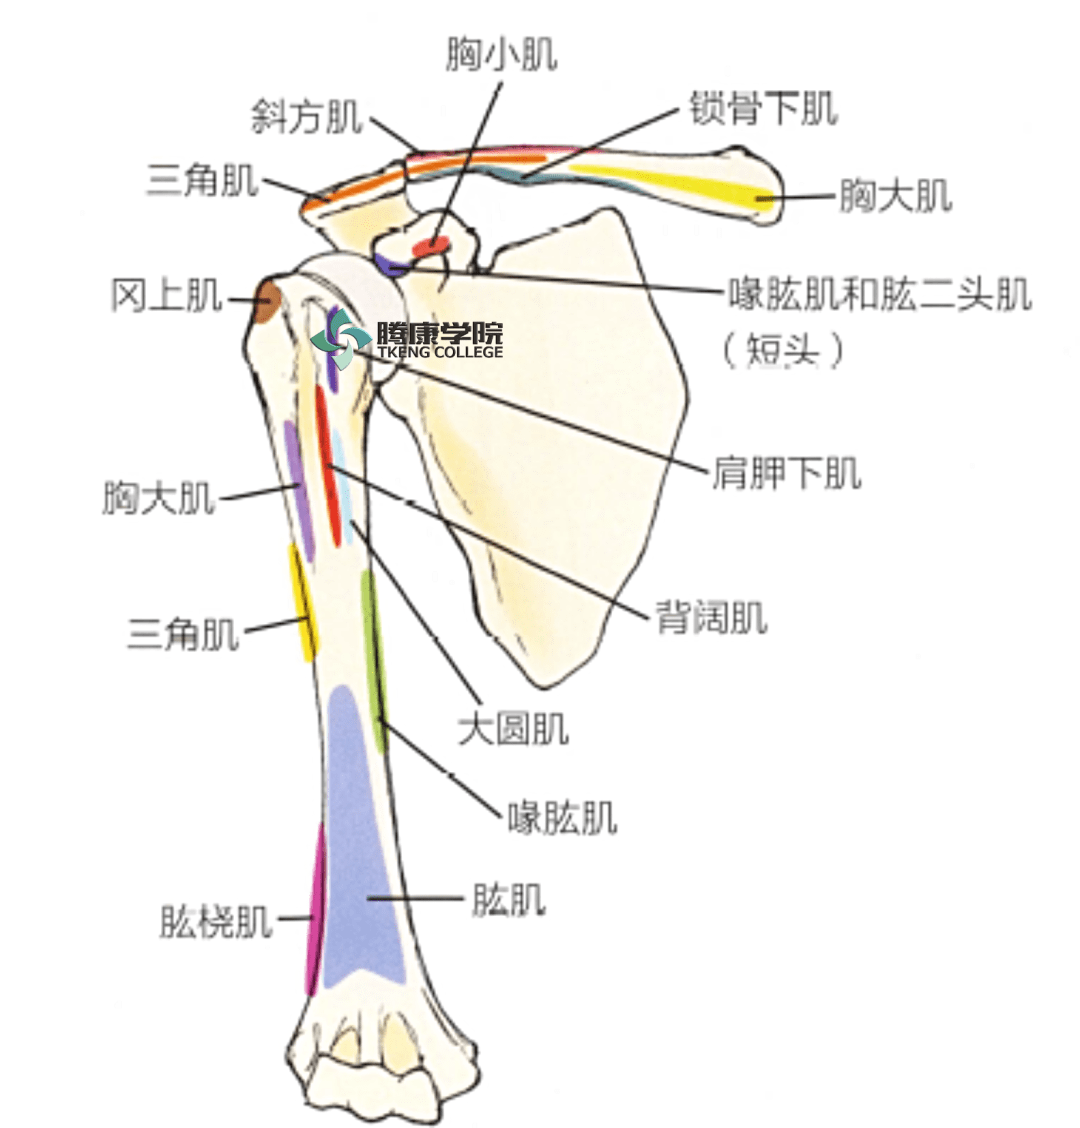 附着在肱骨前面的肌肉通常缩短并紧张,从而将手臂拉至内收,内旋的位置